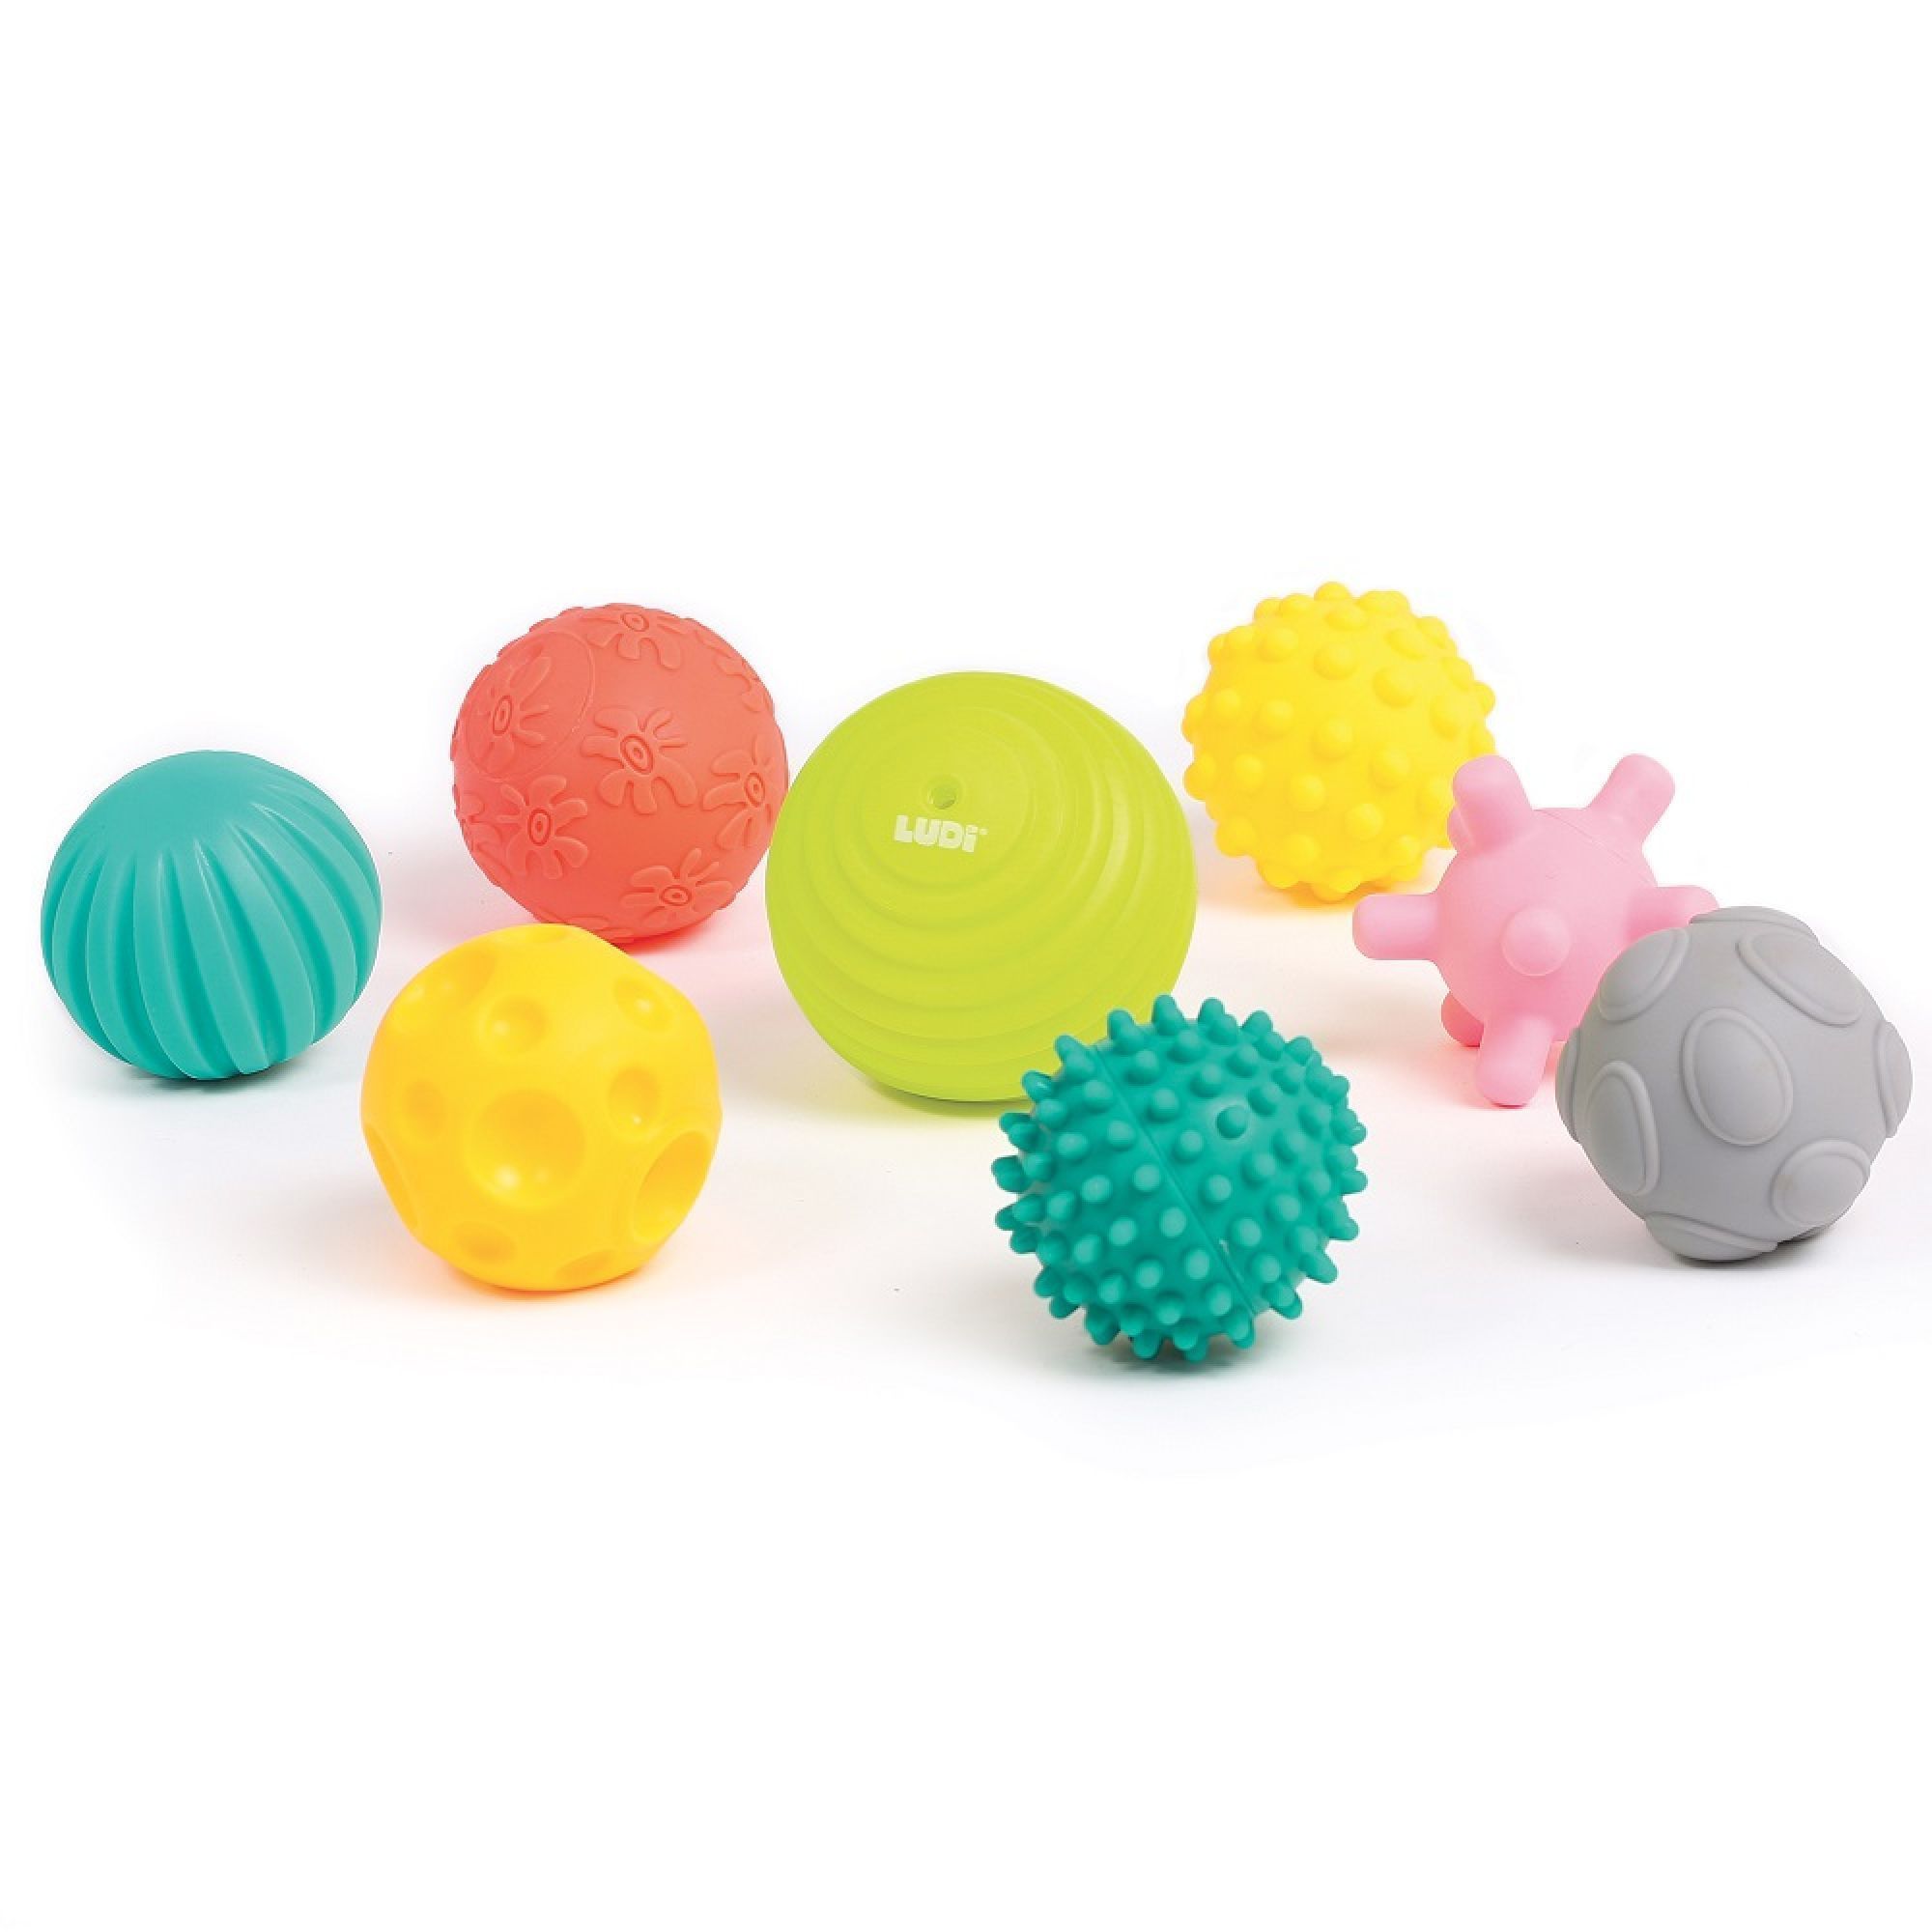 Coffret de 5 balles bébé - éveil sensoriel - Multicolore - Kiabi - 19.90€